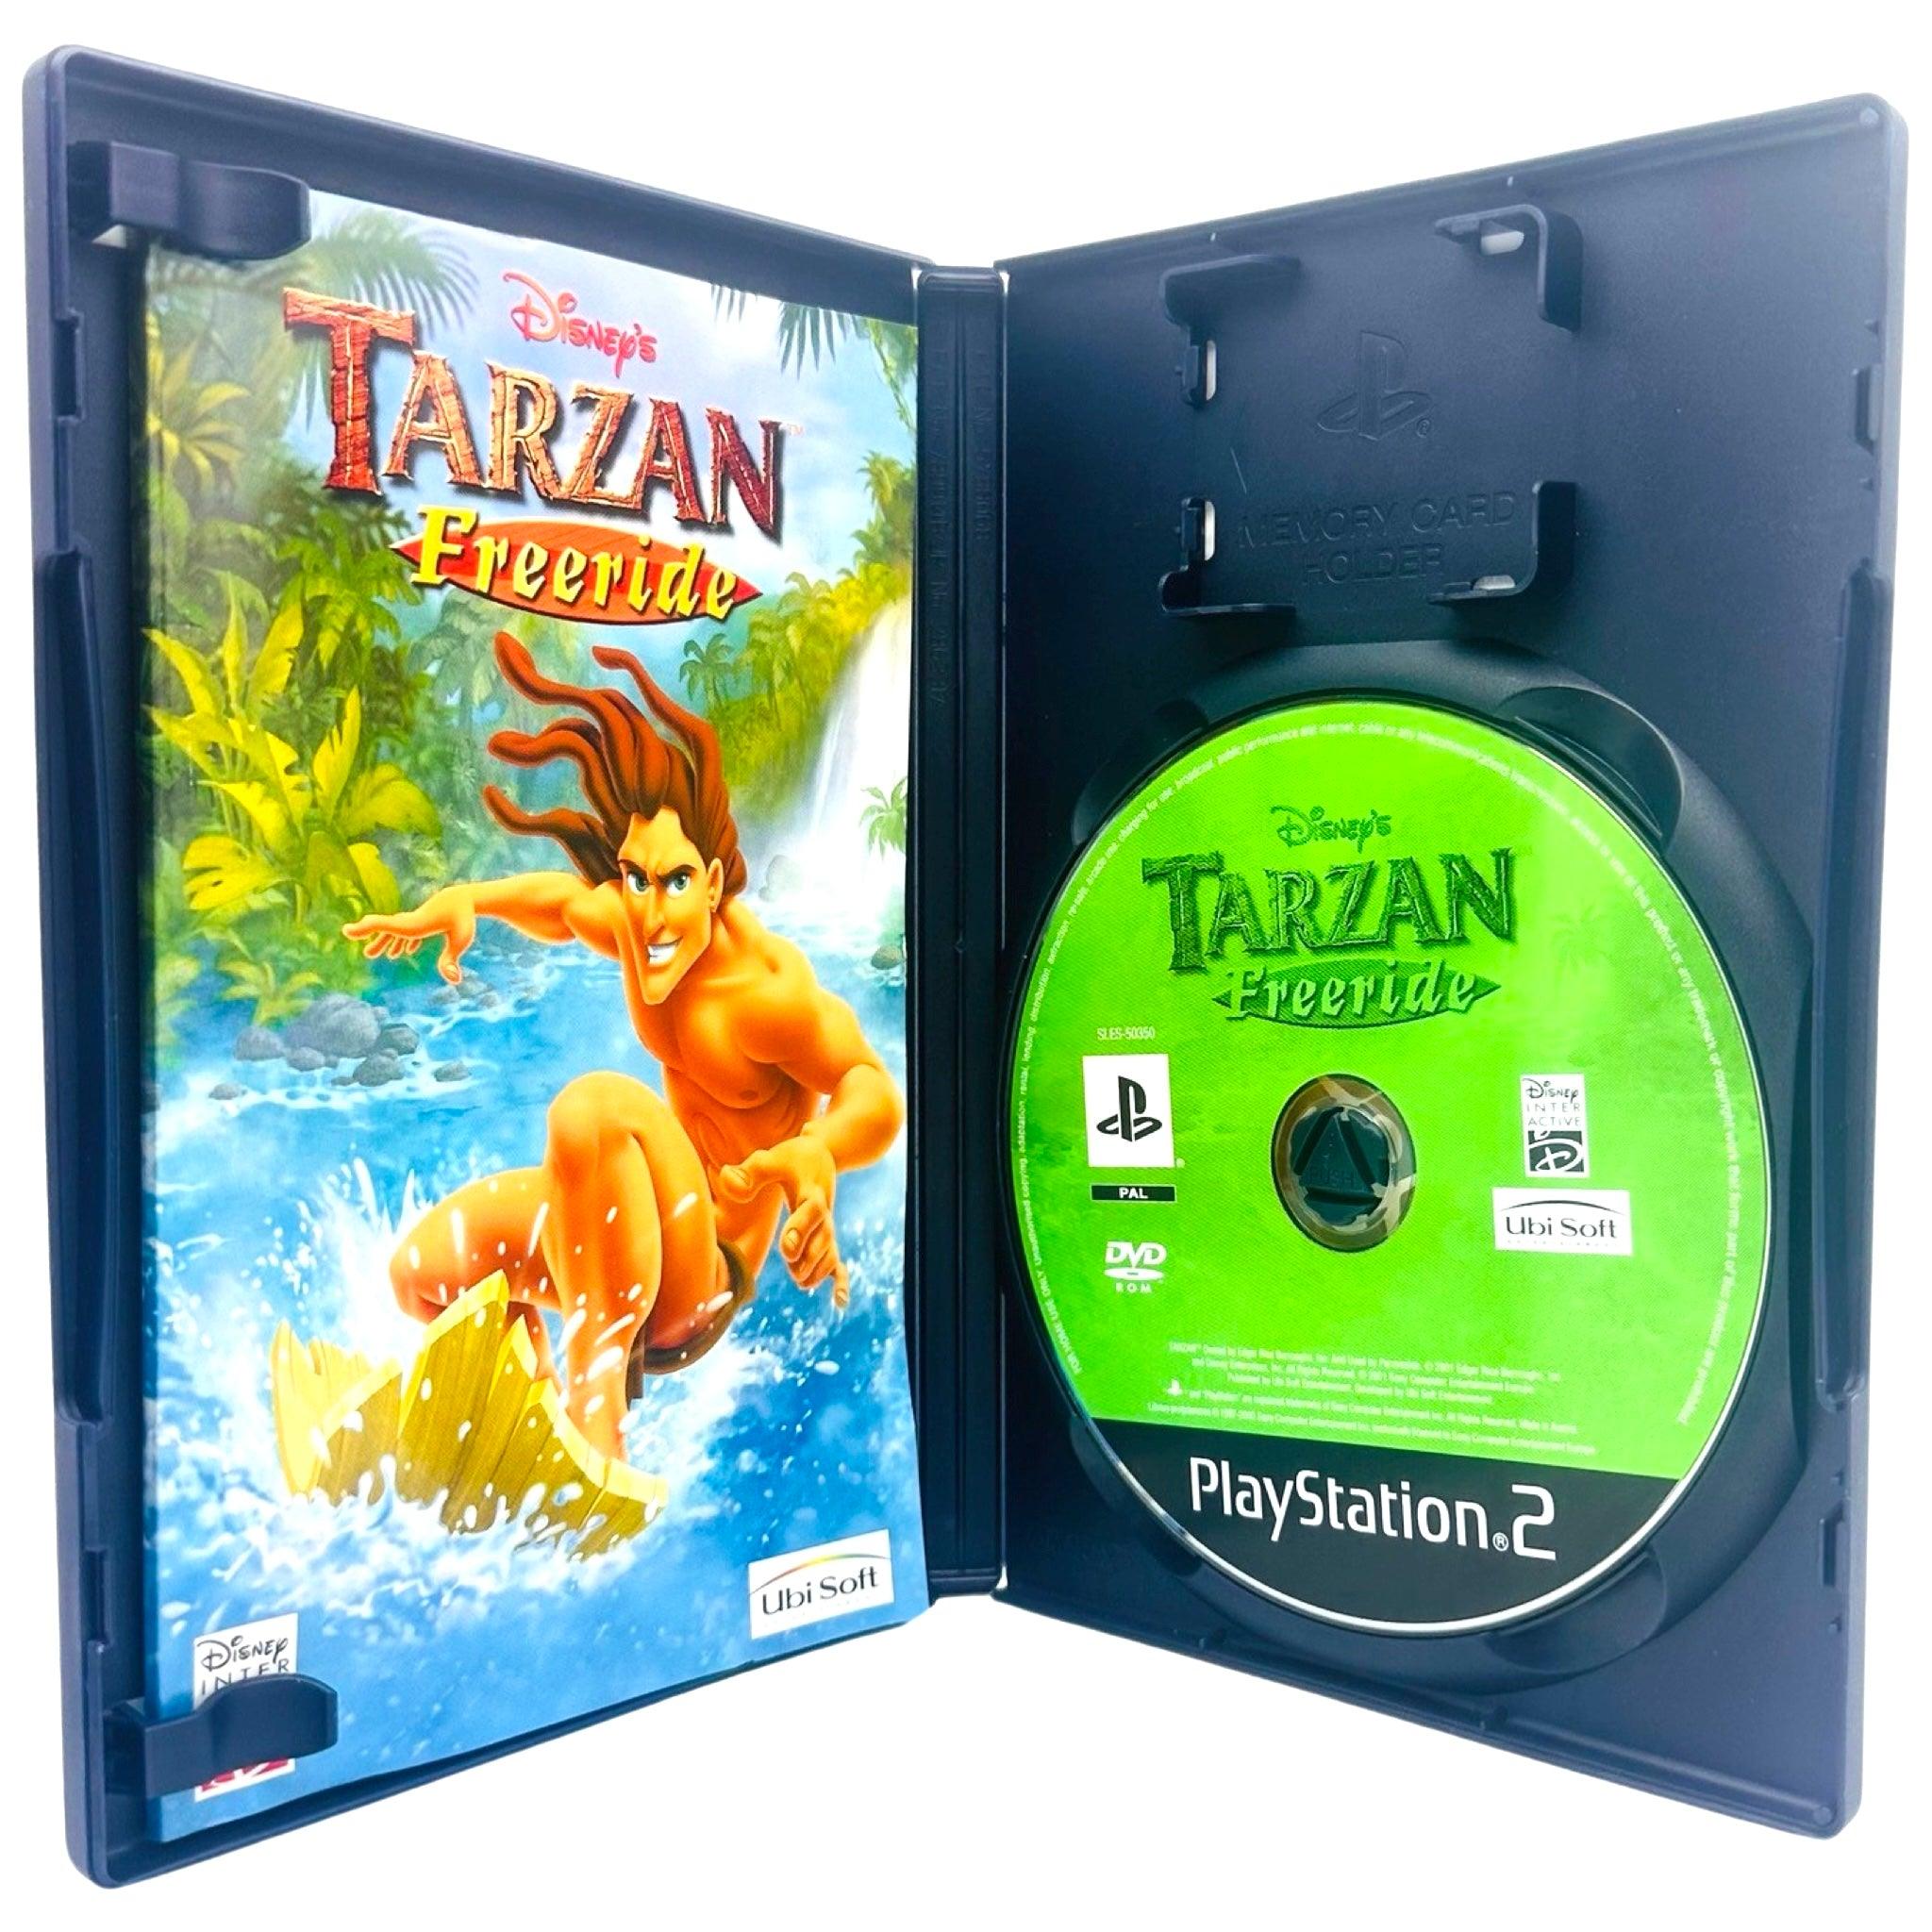 PS2: Tarzan: Freeride - RetroGaming.no